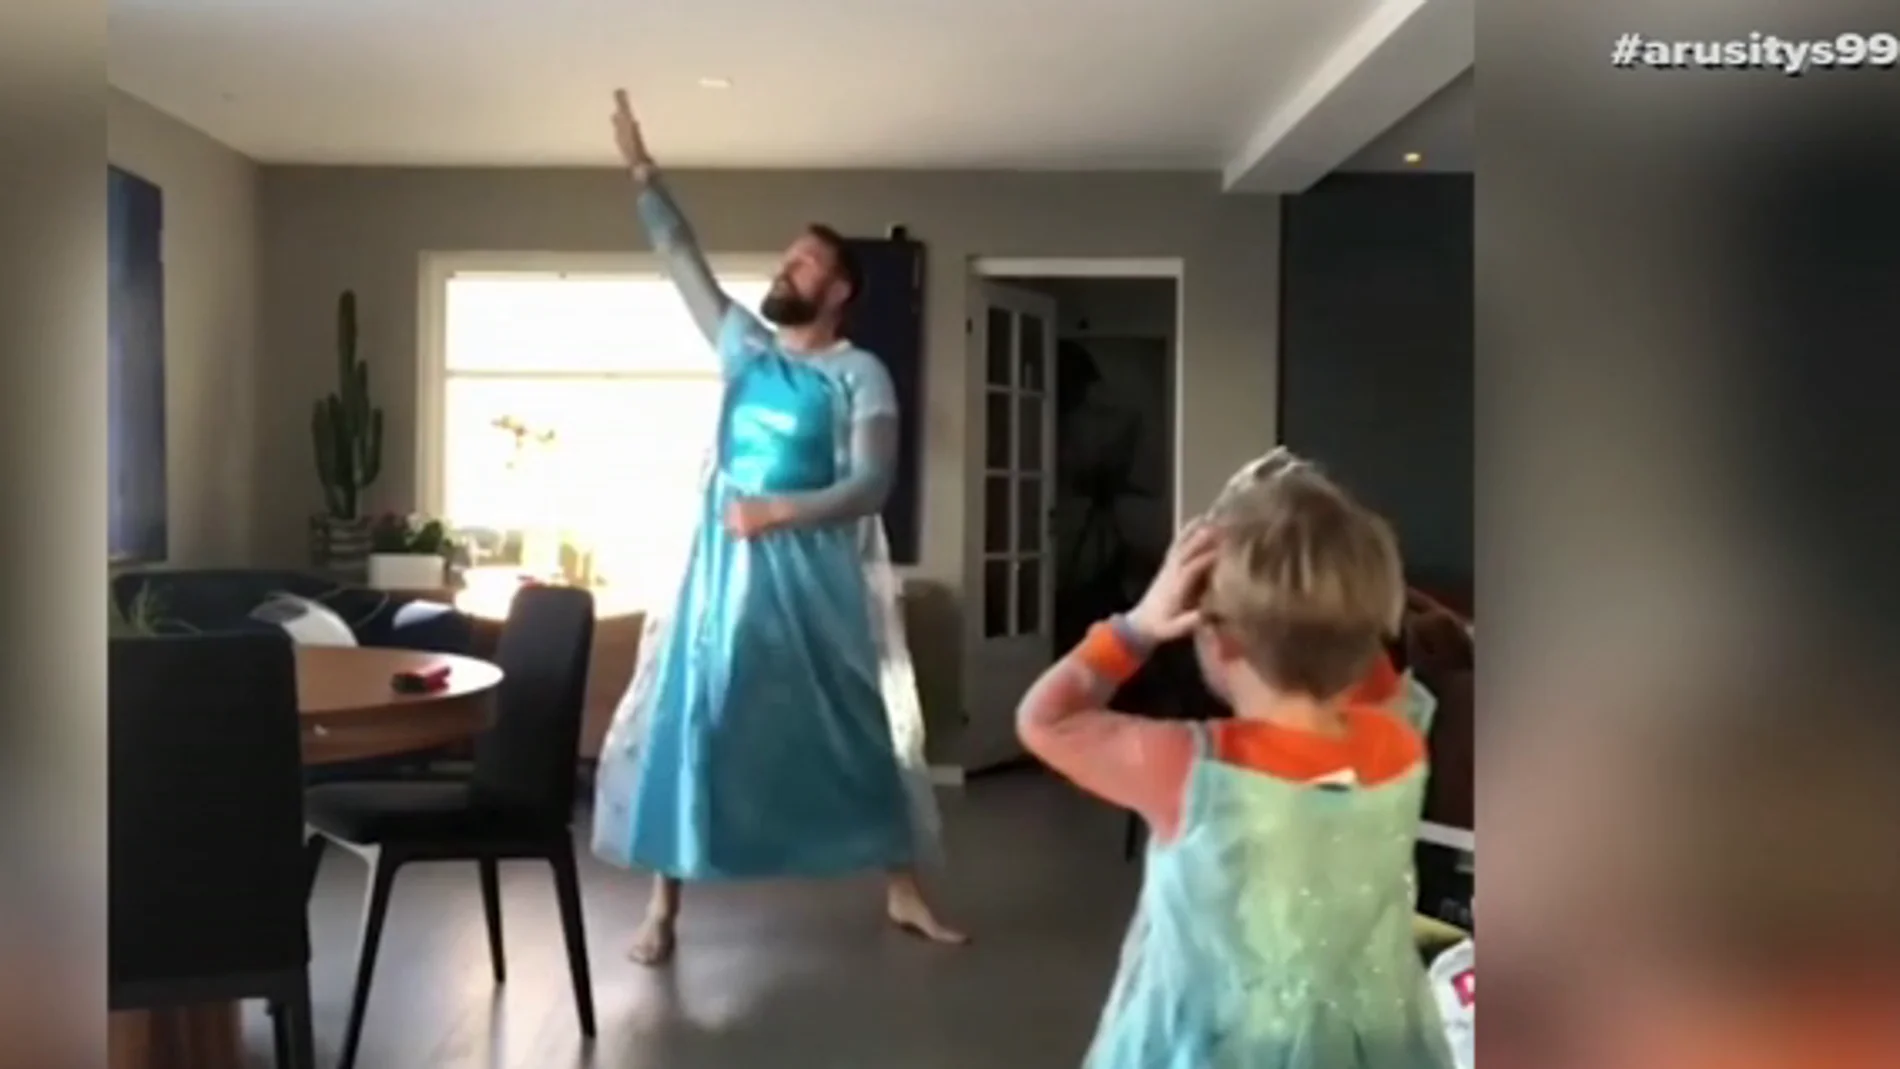 Un hombre se disfraza junto a su hijo de la protagonista de Frozen porque es su "superheroína": "Es importante no imponerles prejuicios"